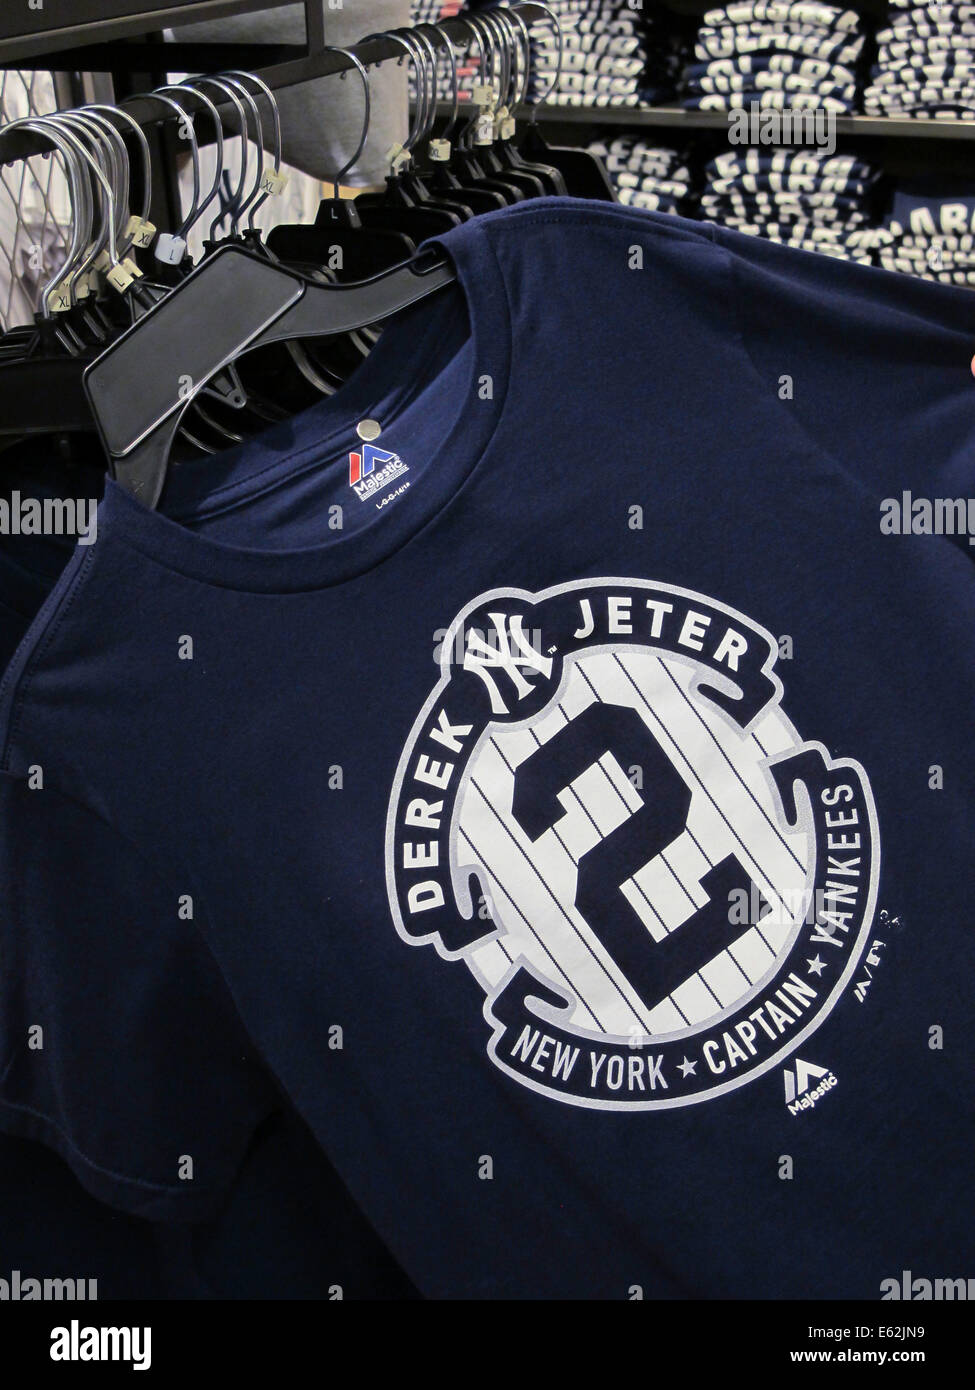 Derek Jeter, le capitaine T-shirt commémoratif, Modell's Sporting Goods Store intérieur, NYC Banque D'Images